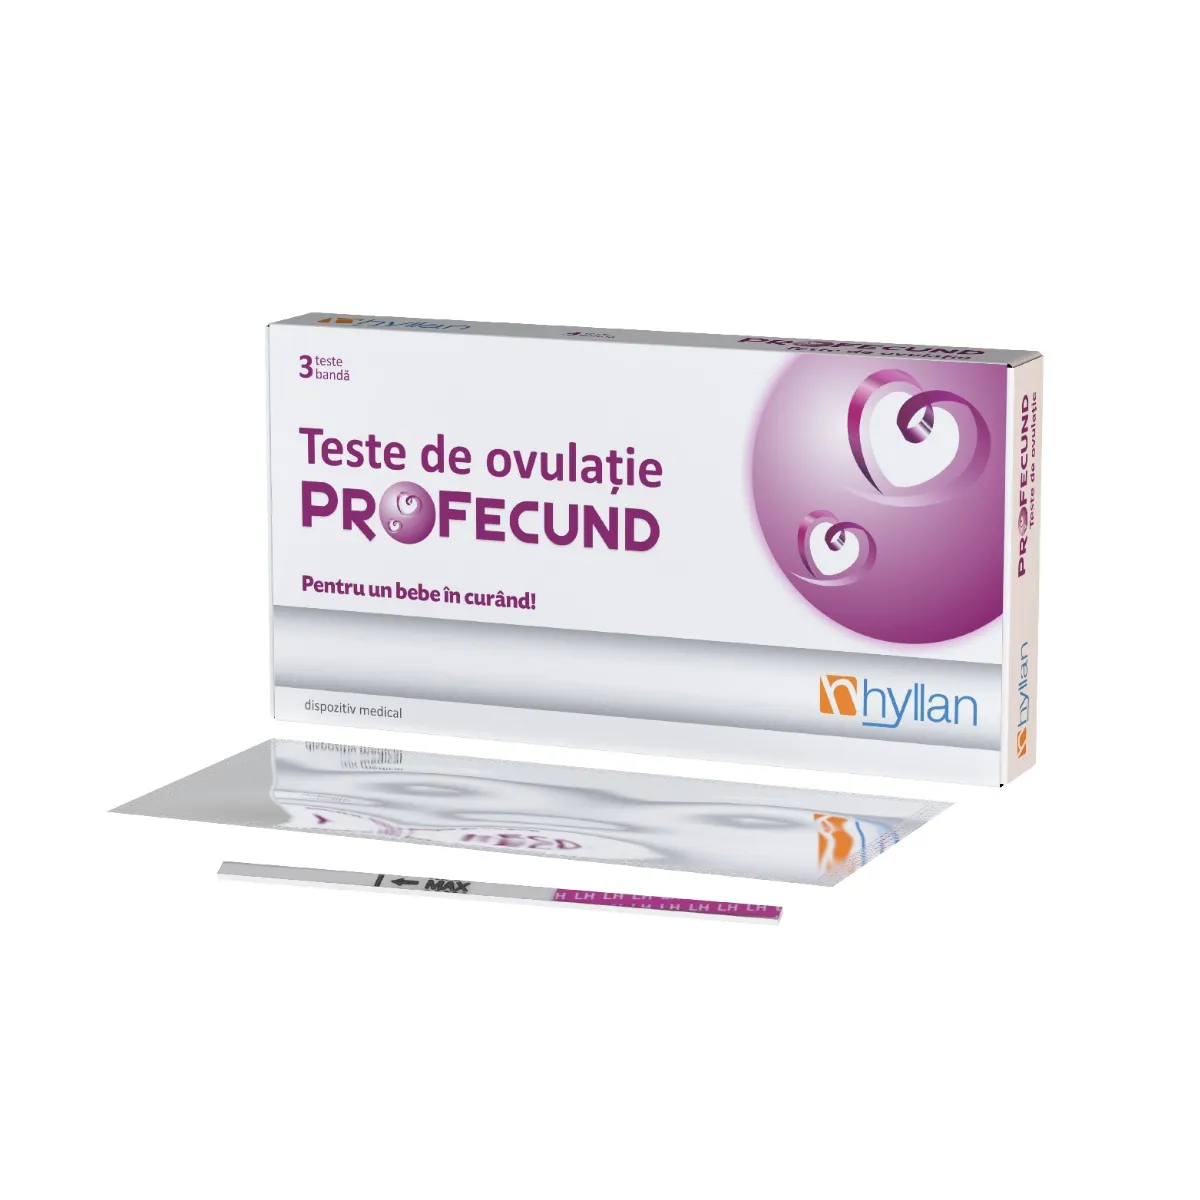 Teste de ovulatie ProFecund, 3 teste, Hyllan Pharma